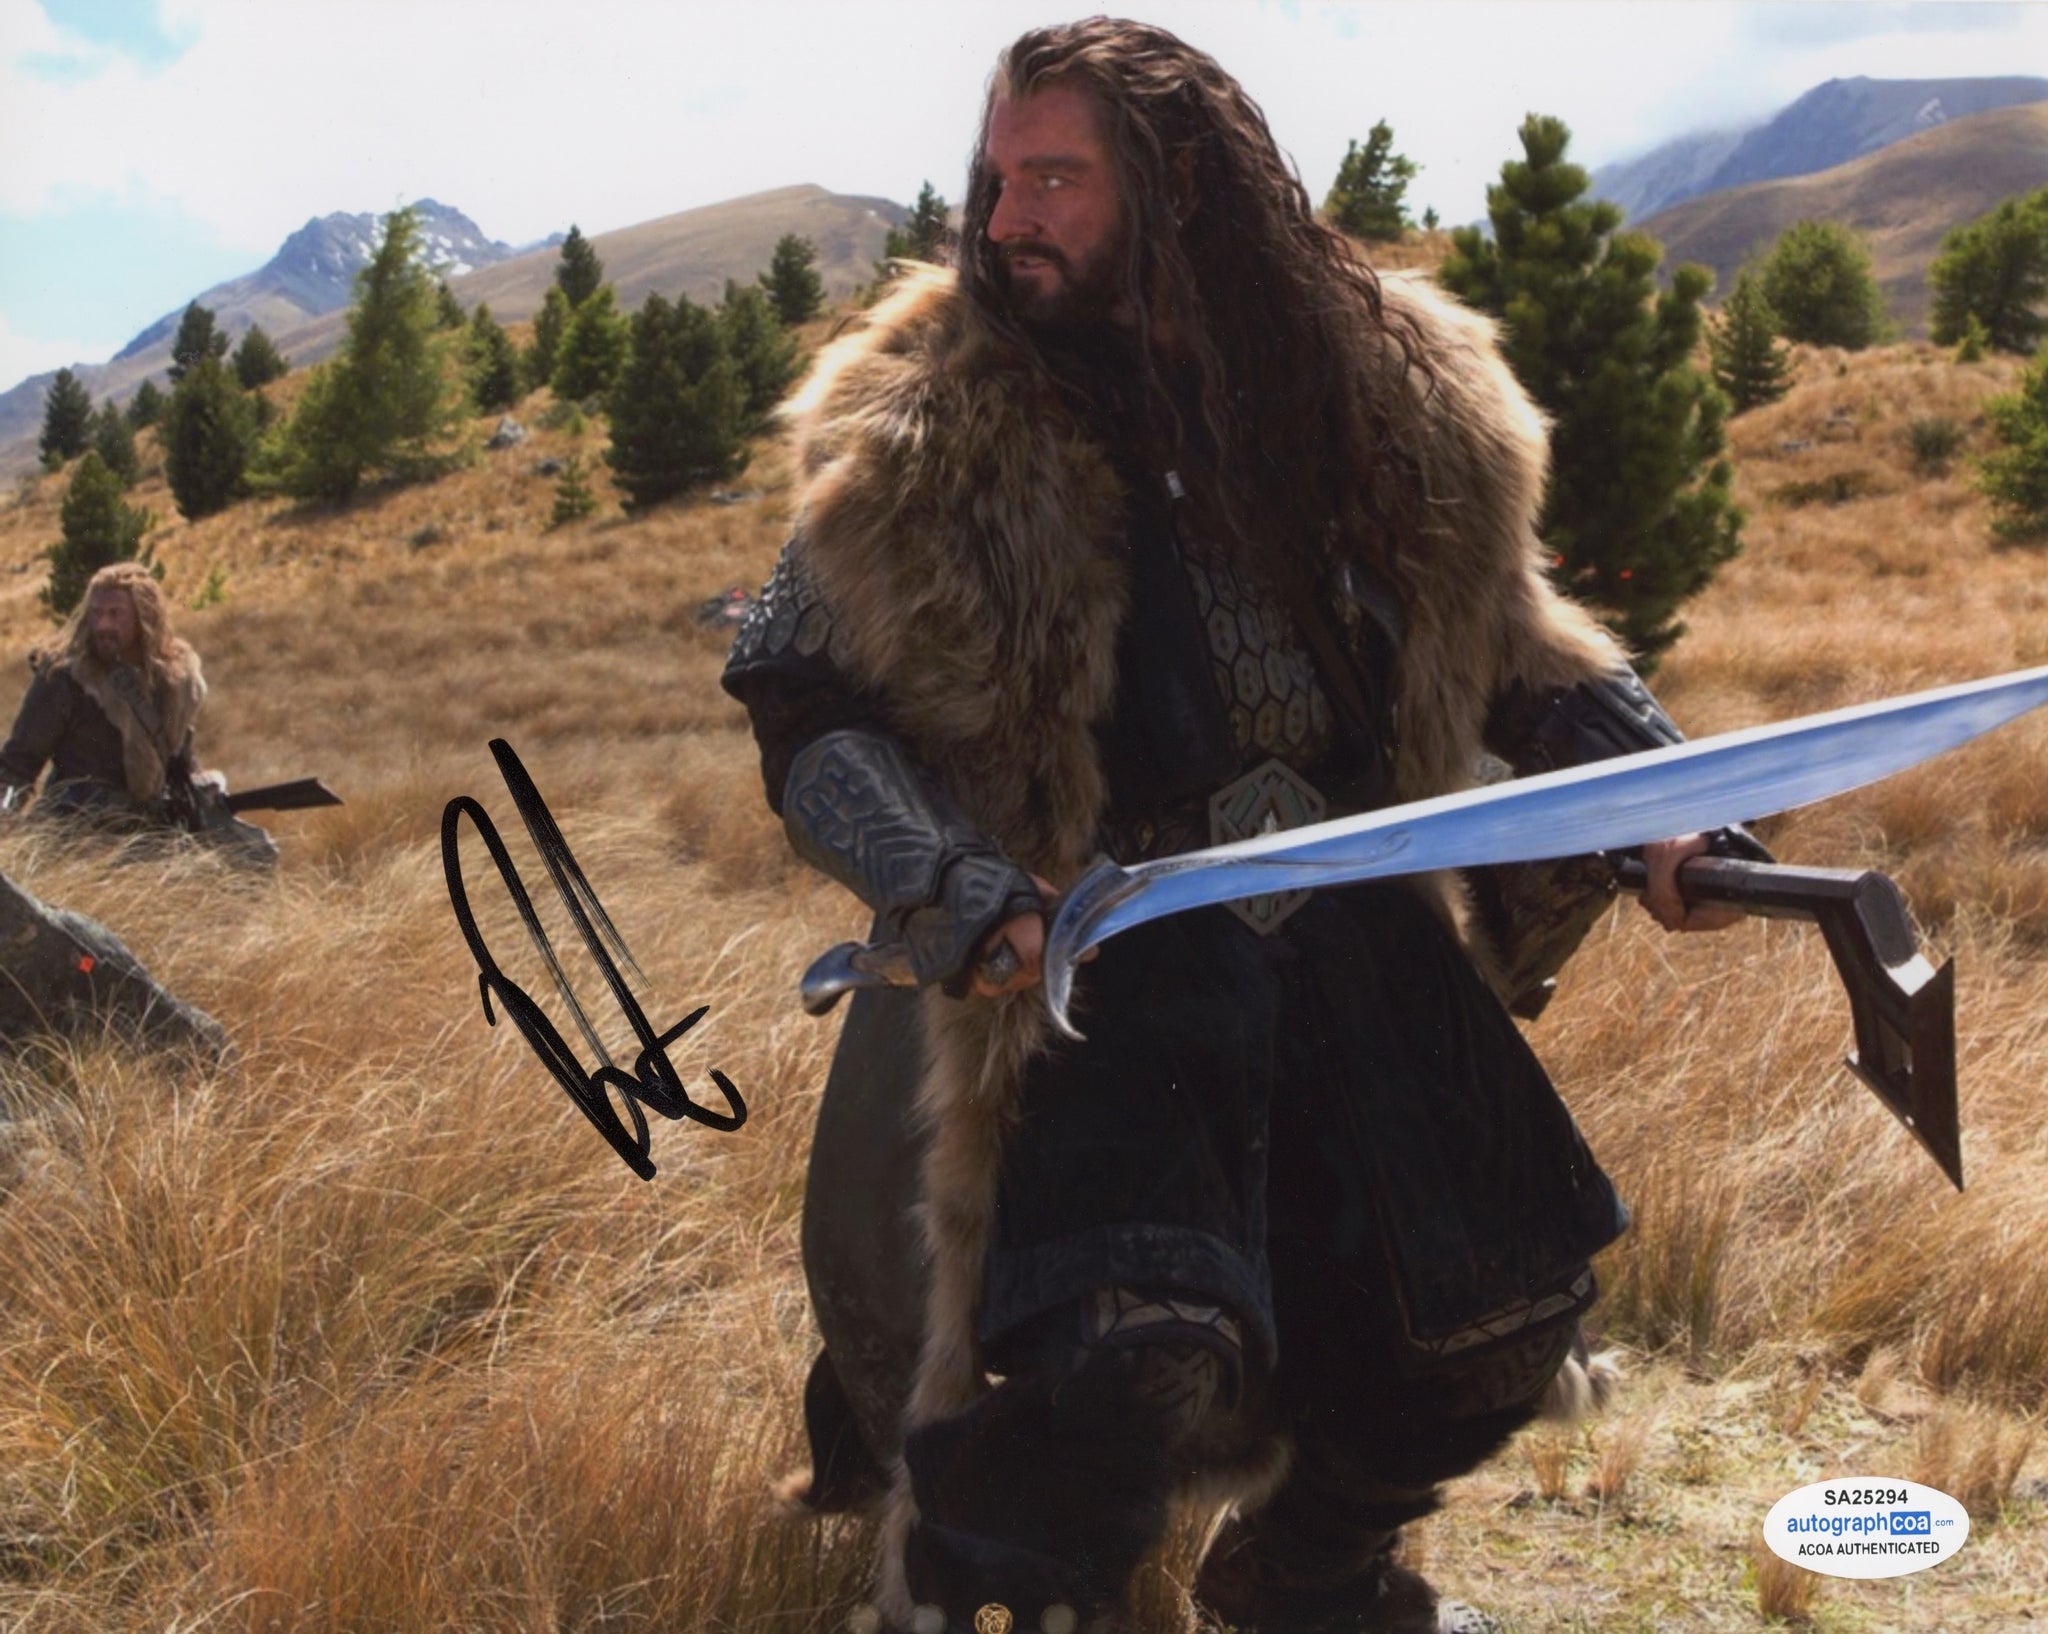 Richard Armitage The Hobbit Signed Autograph 8x10 Photo ACOA #3 - Outlaw Hobbies Authentic Autographs